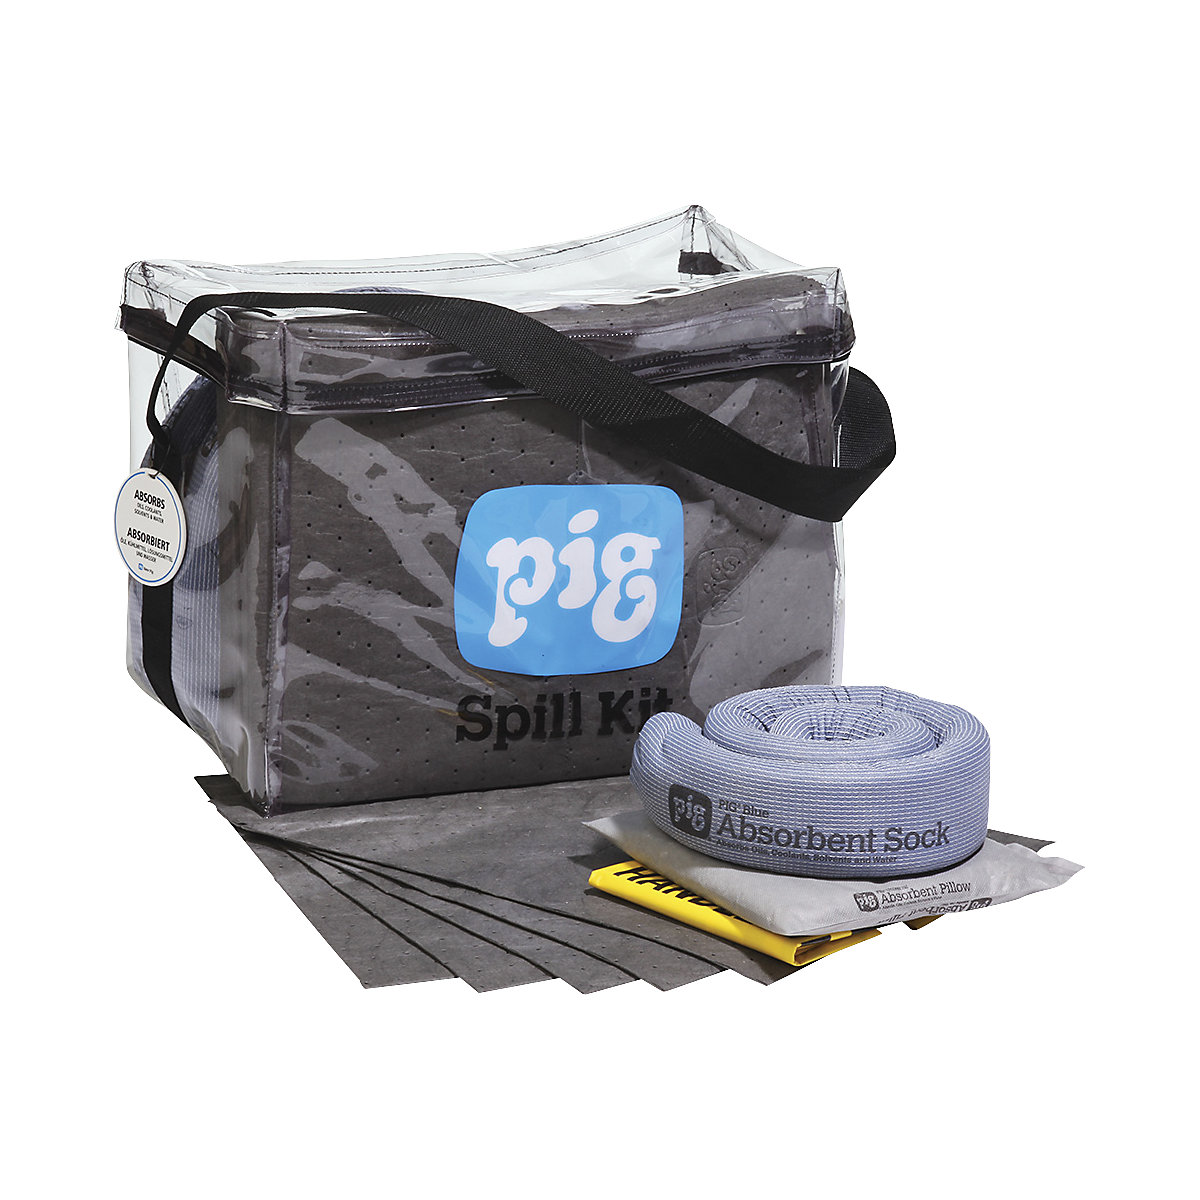 Kit d'urgence dans un sac transparent – PIG